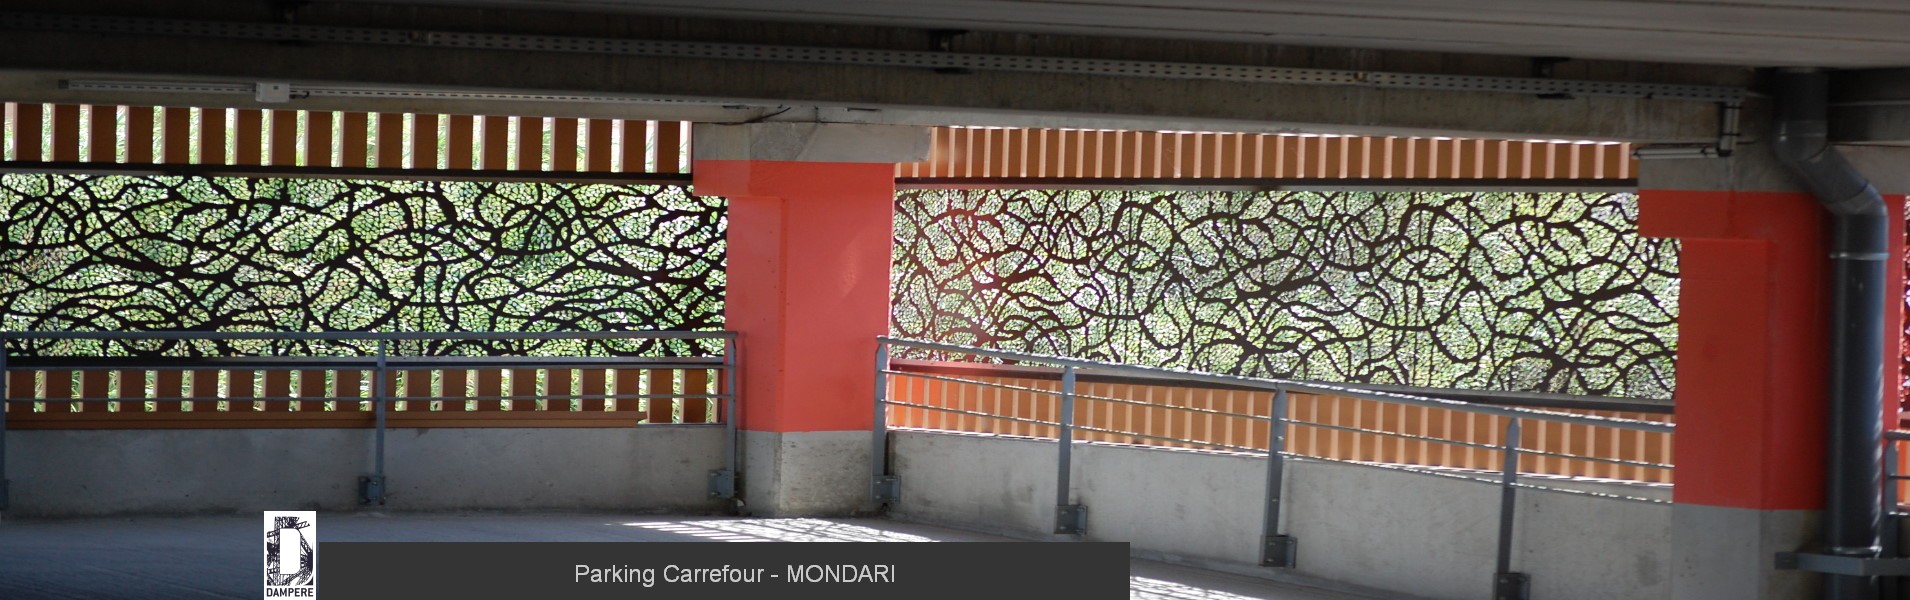 Parking Carrefour MONDARI 8 1